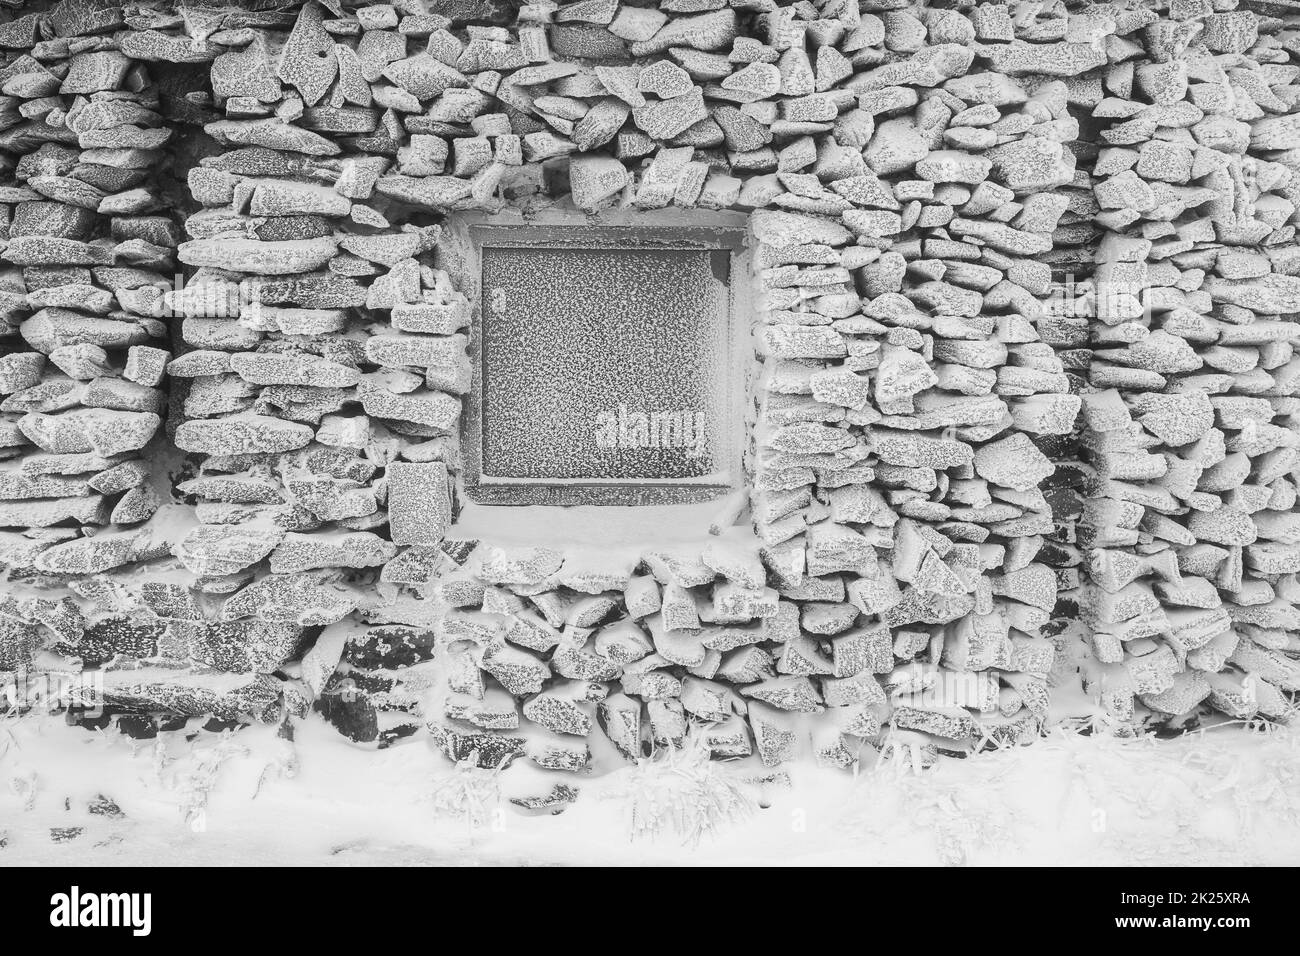 Mur en pierre et fenêtres d'un ancien bâtiment abandonné recouvert de glace et de neige.Arrière-plan.Noir et blanc. Banque D'Images